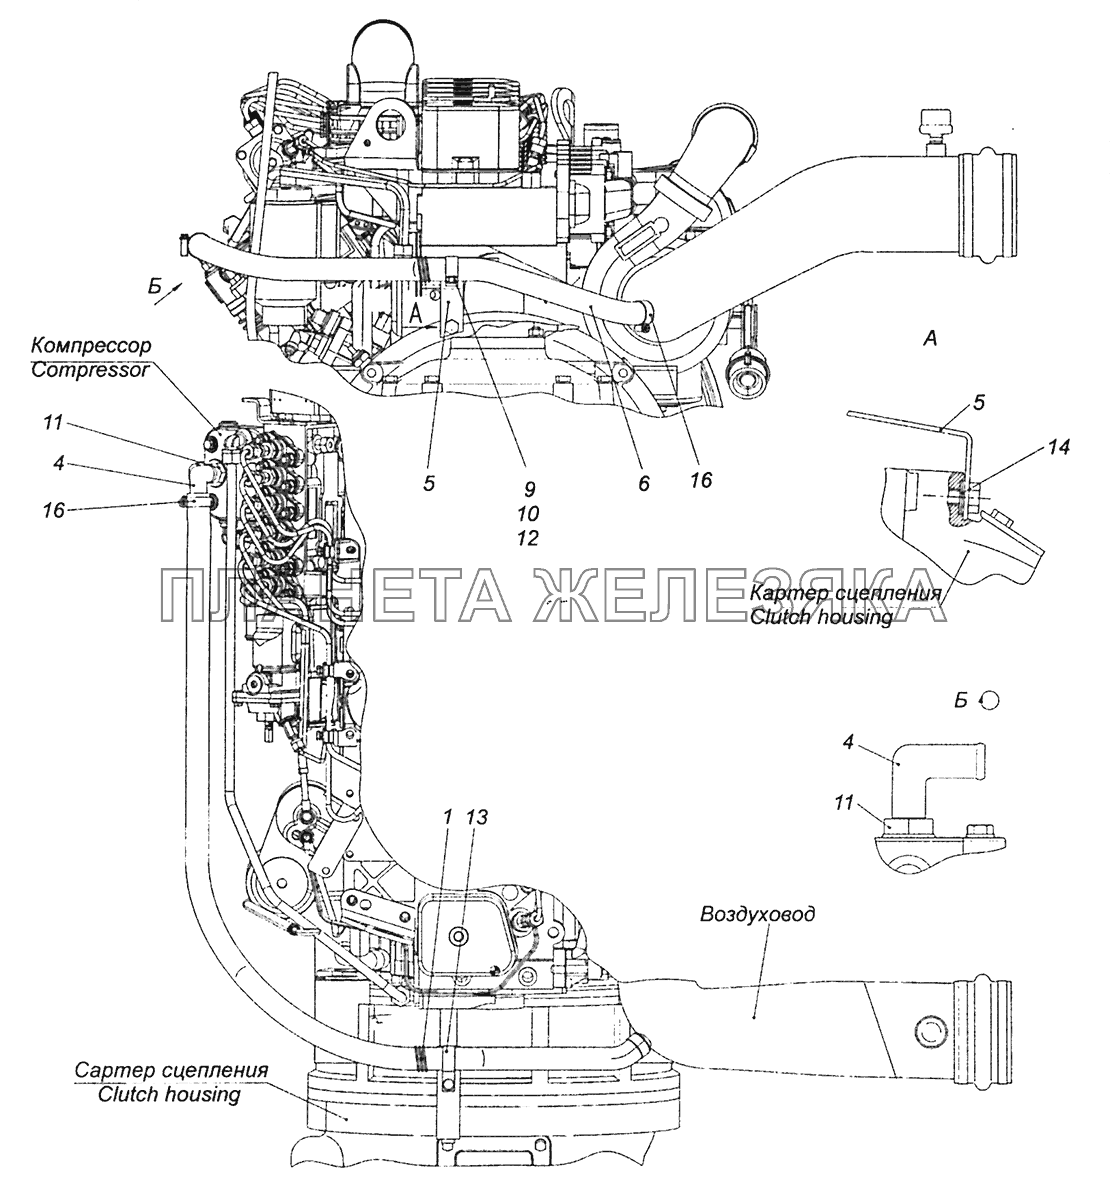 4308-3509003 Установка подвода воздуха к компрессору КамАЗ-43255 (Евро-2)